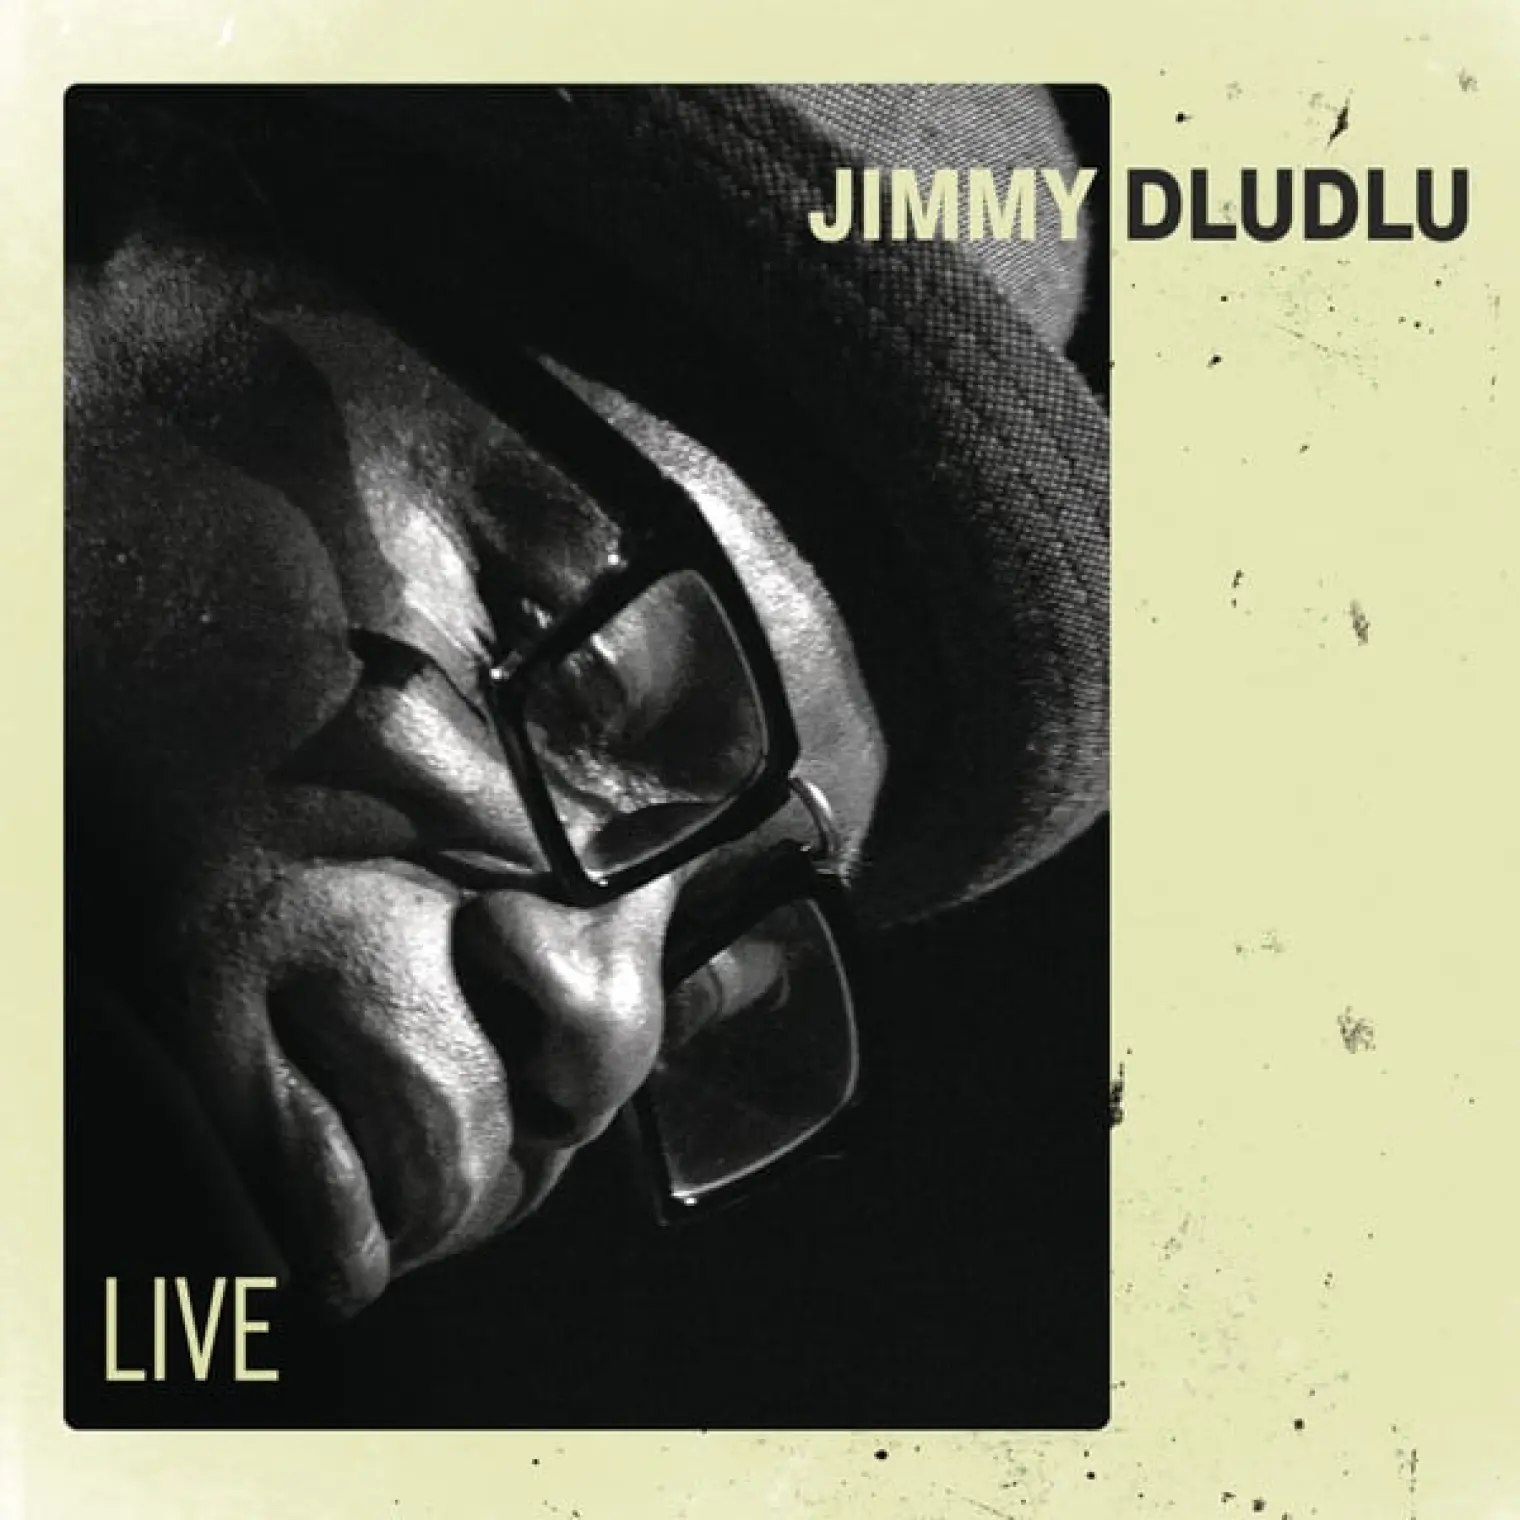 Live -  Jimmy Dludlu 